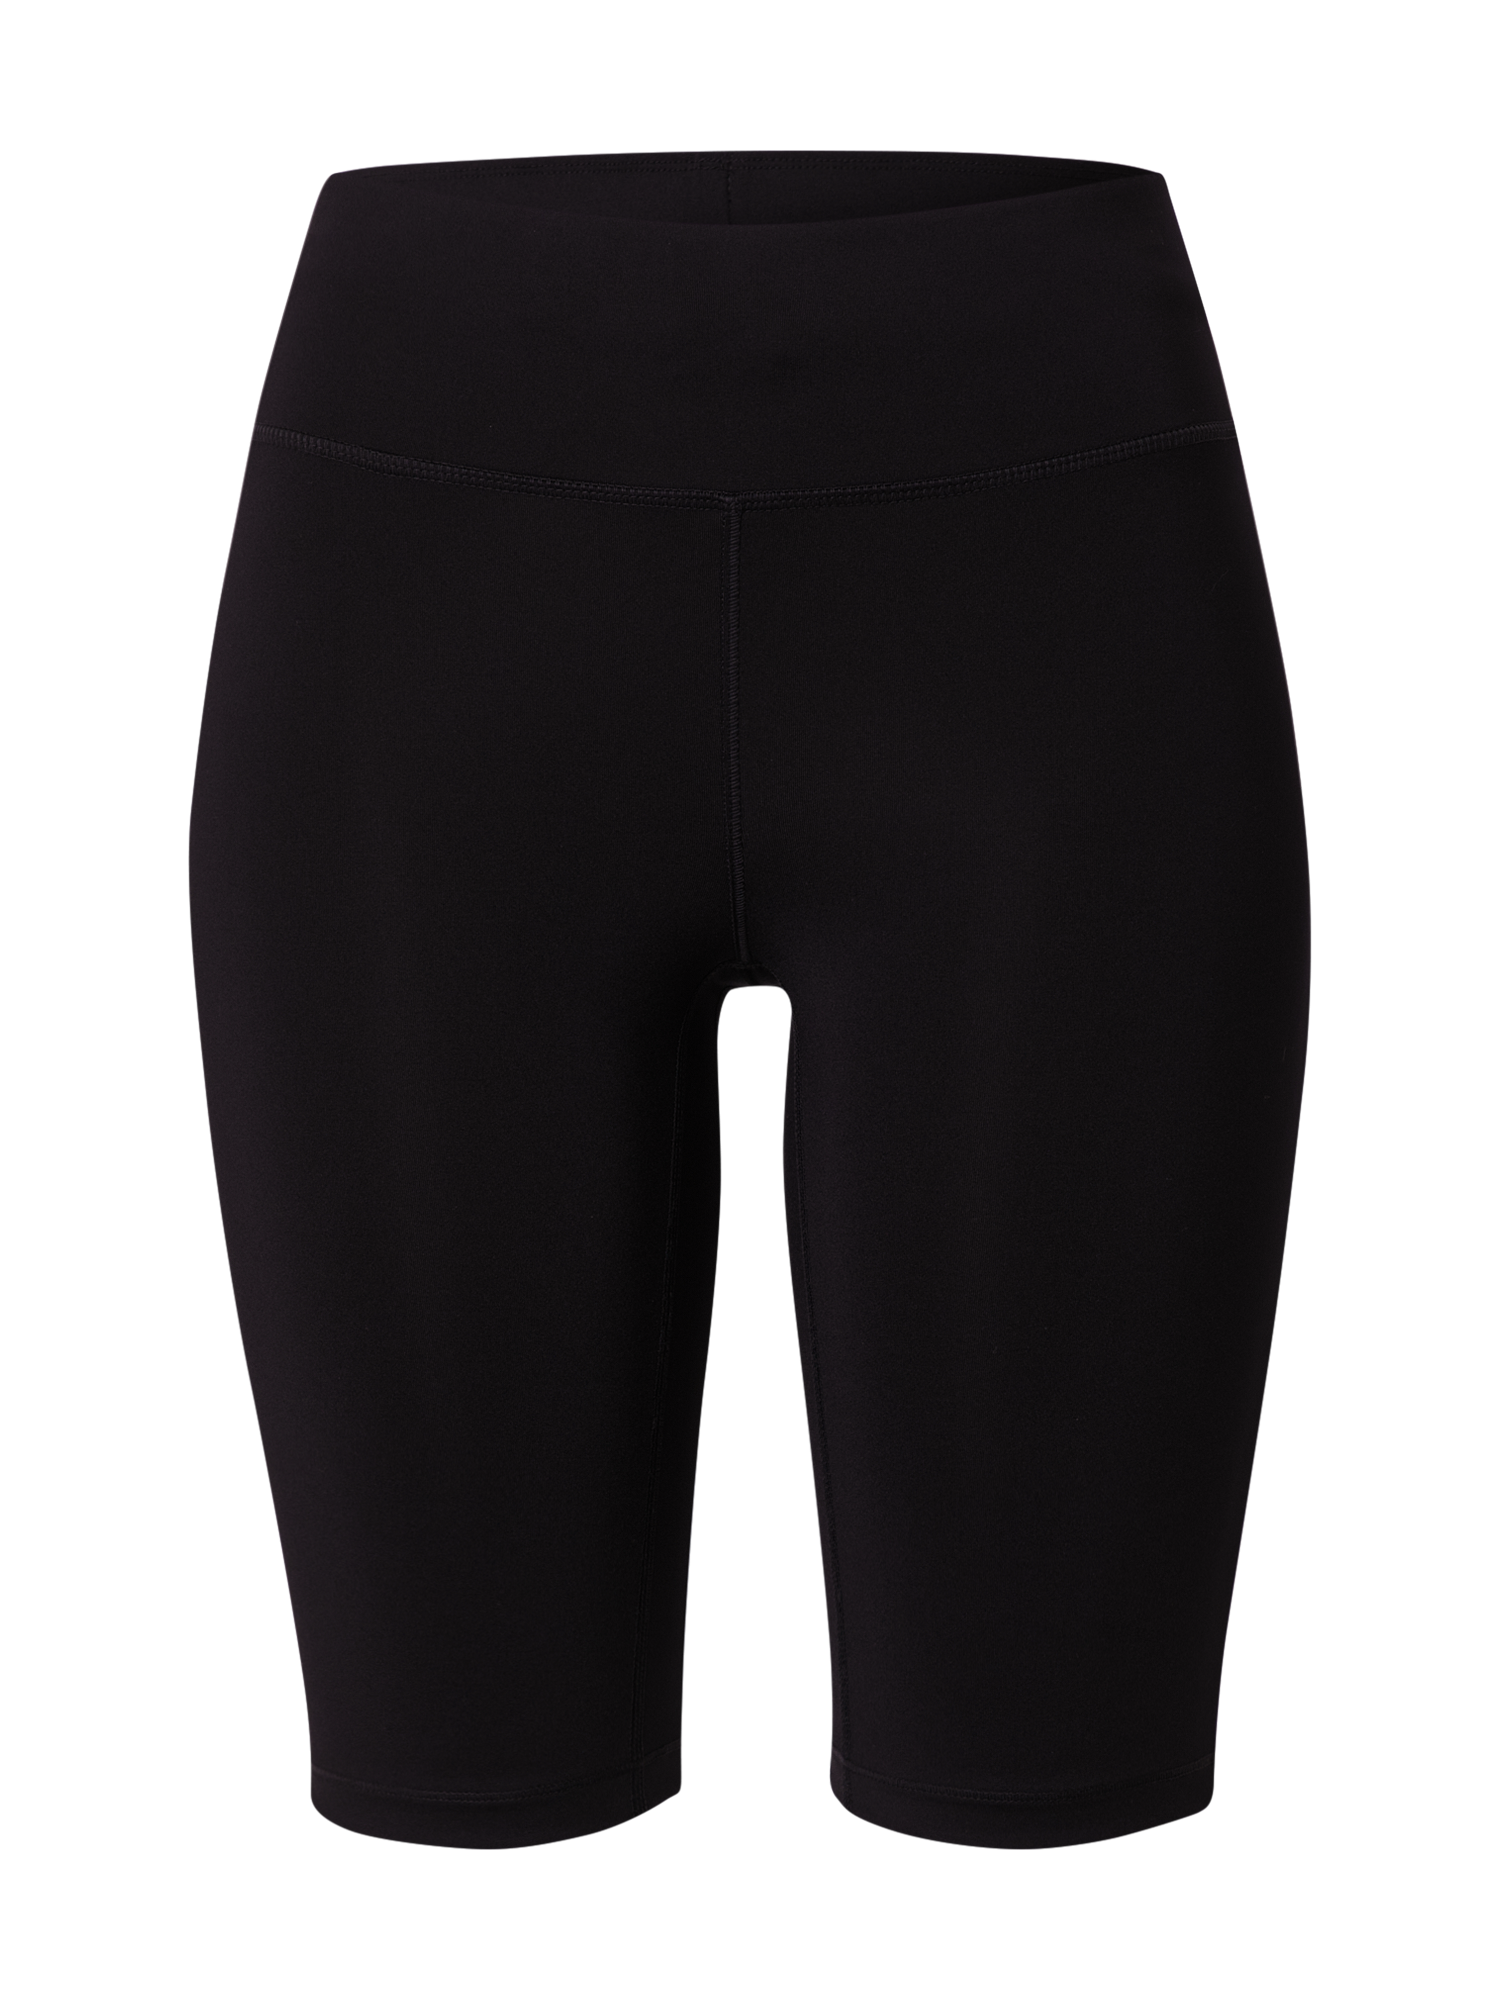 Kobiety Odzież Casall Spodnie sportowe w kolorze Czarnym 